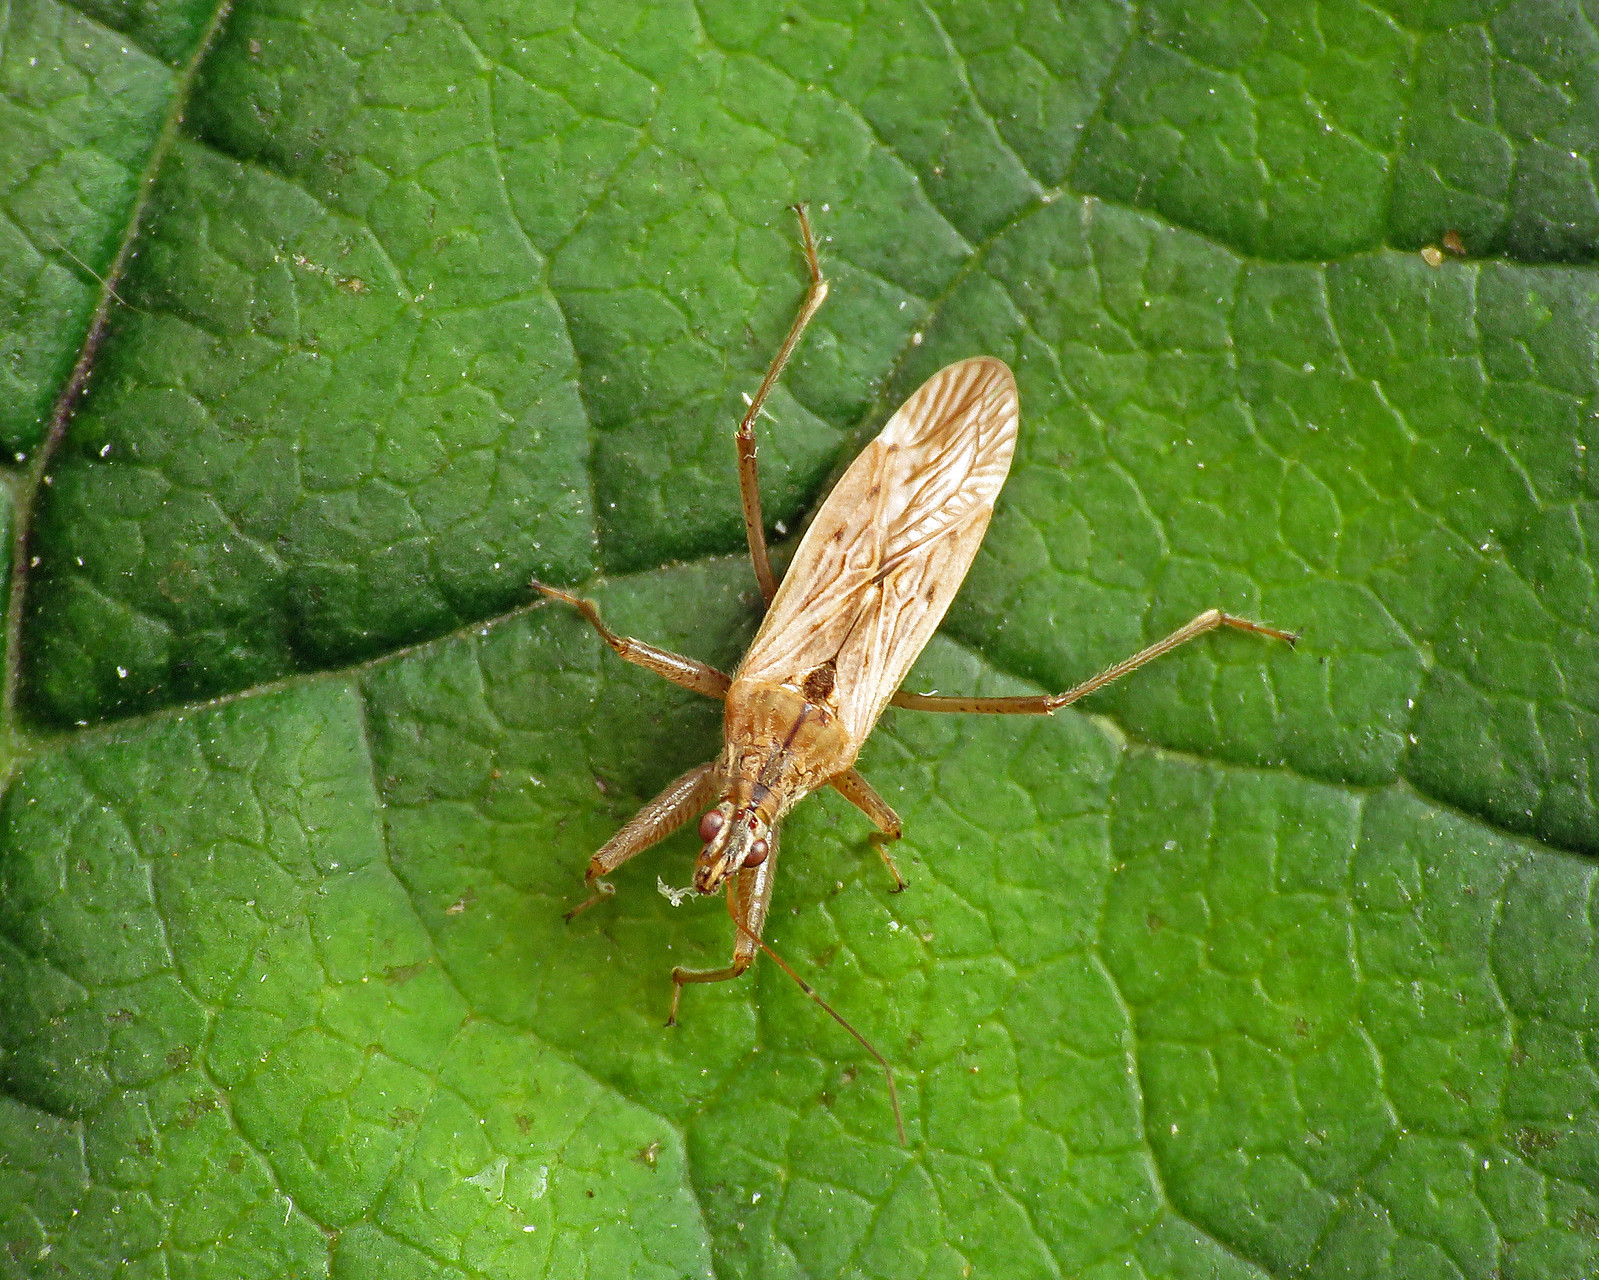 Field Damsel Bug - Nabis ferus